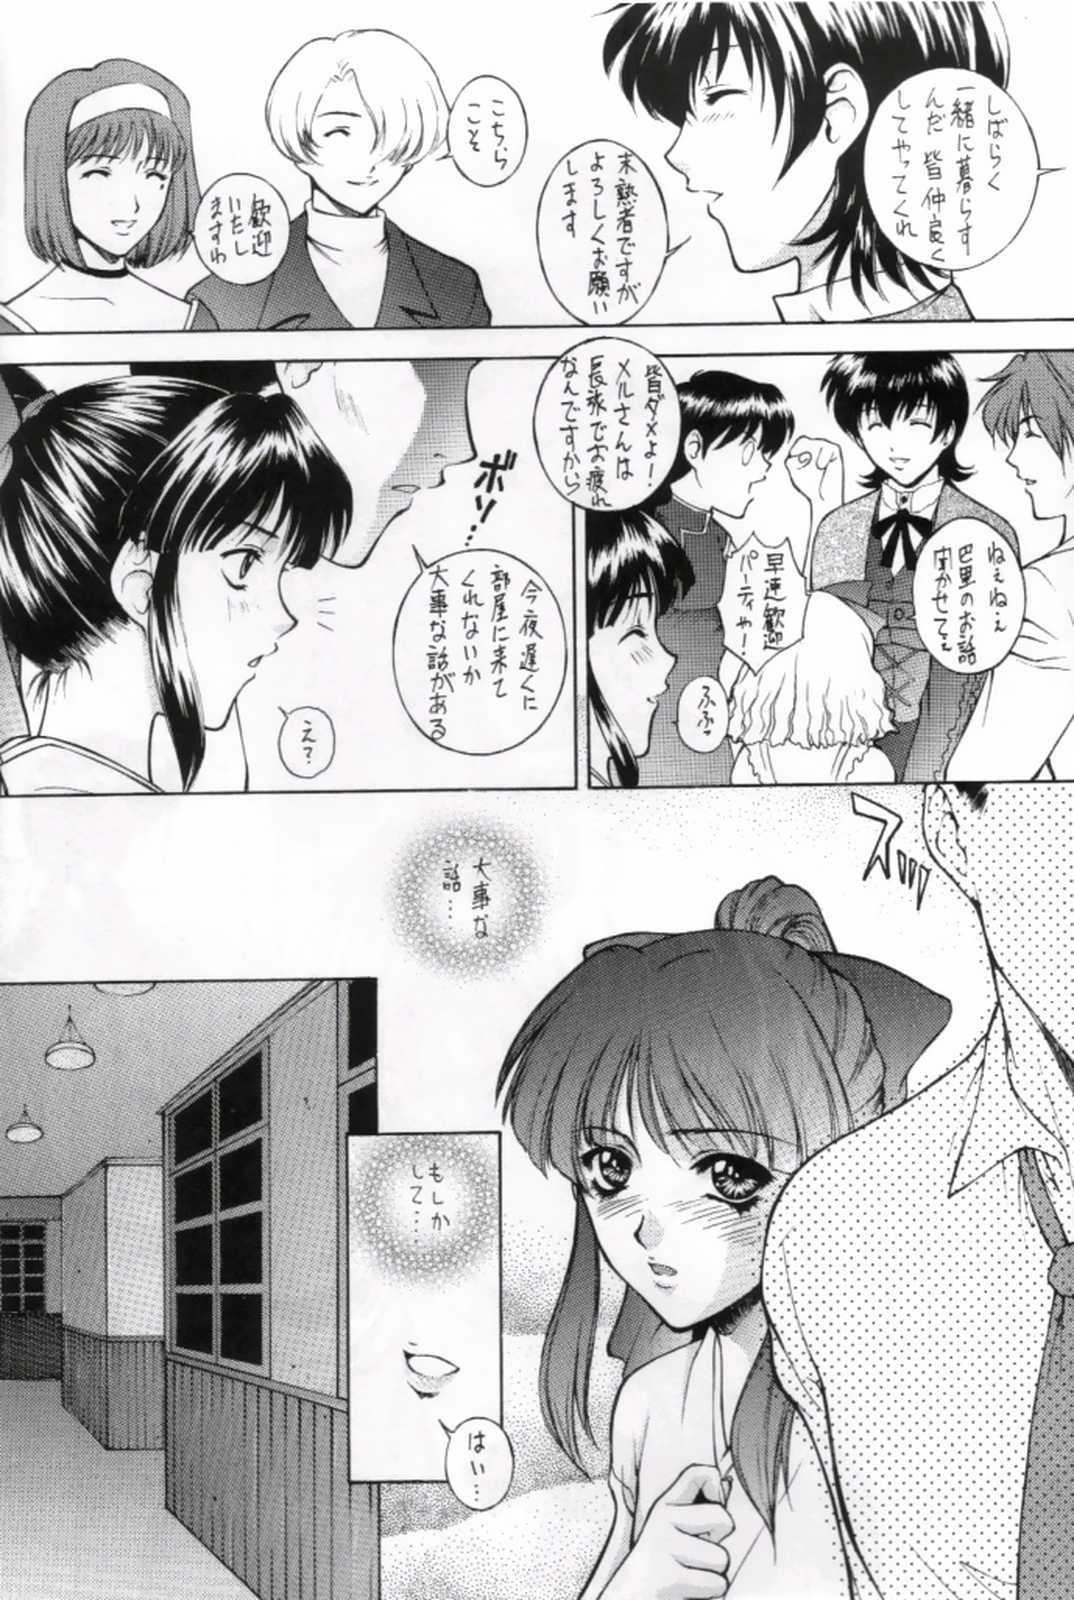 Young HAPPY GO LUCKY 10 - Sakura taisen Hardcore - Page 7